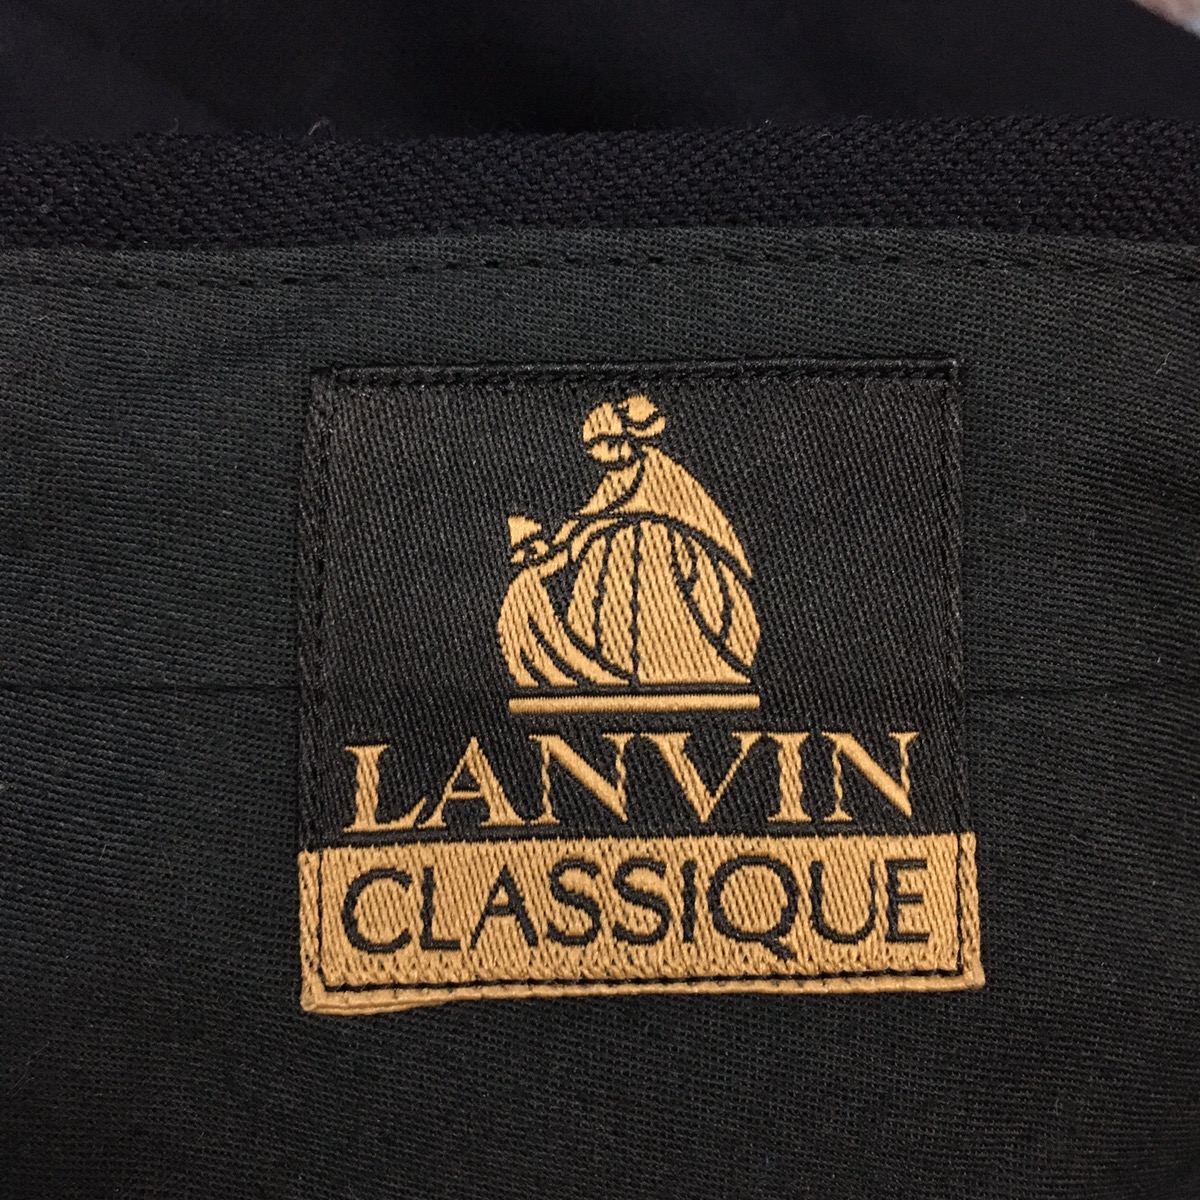 LANVIN CLASSIQUE Stretch Waist Long Pants Trousers Formal - 8